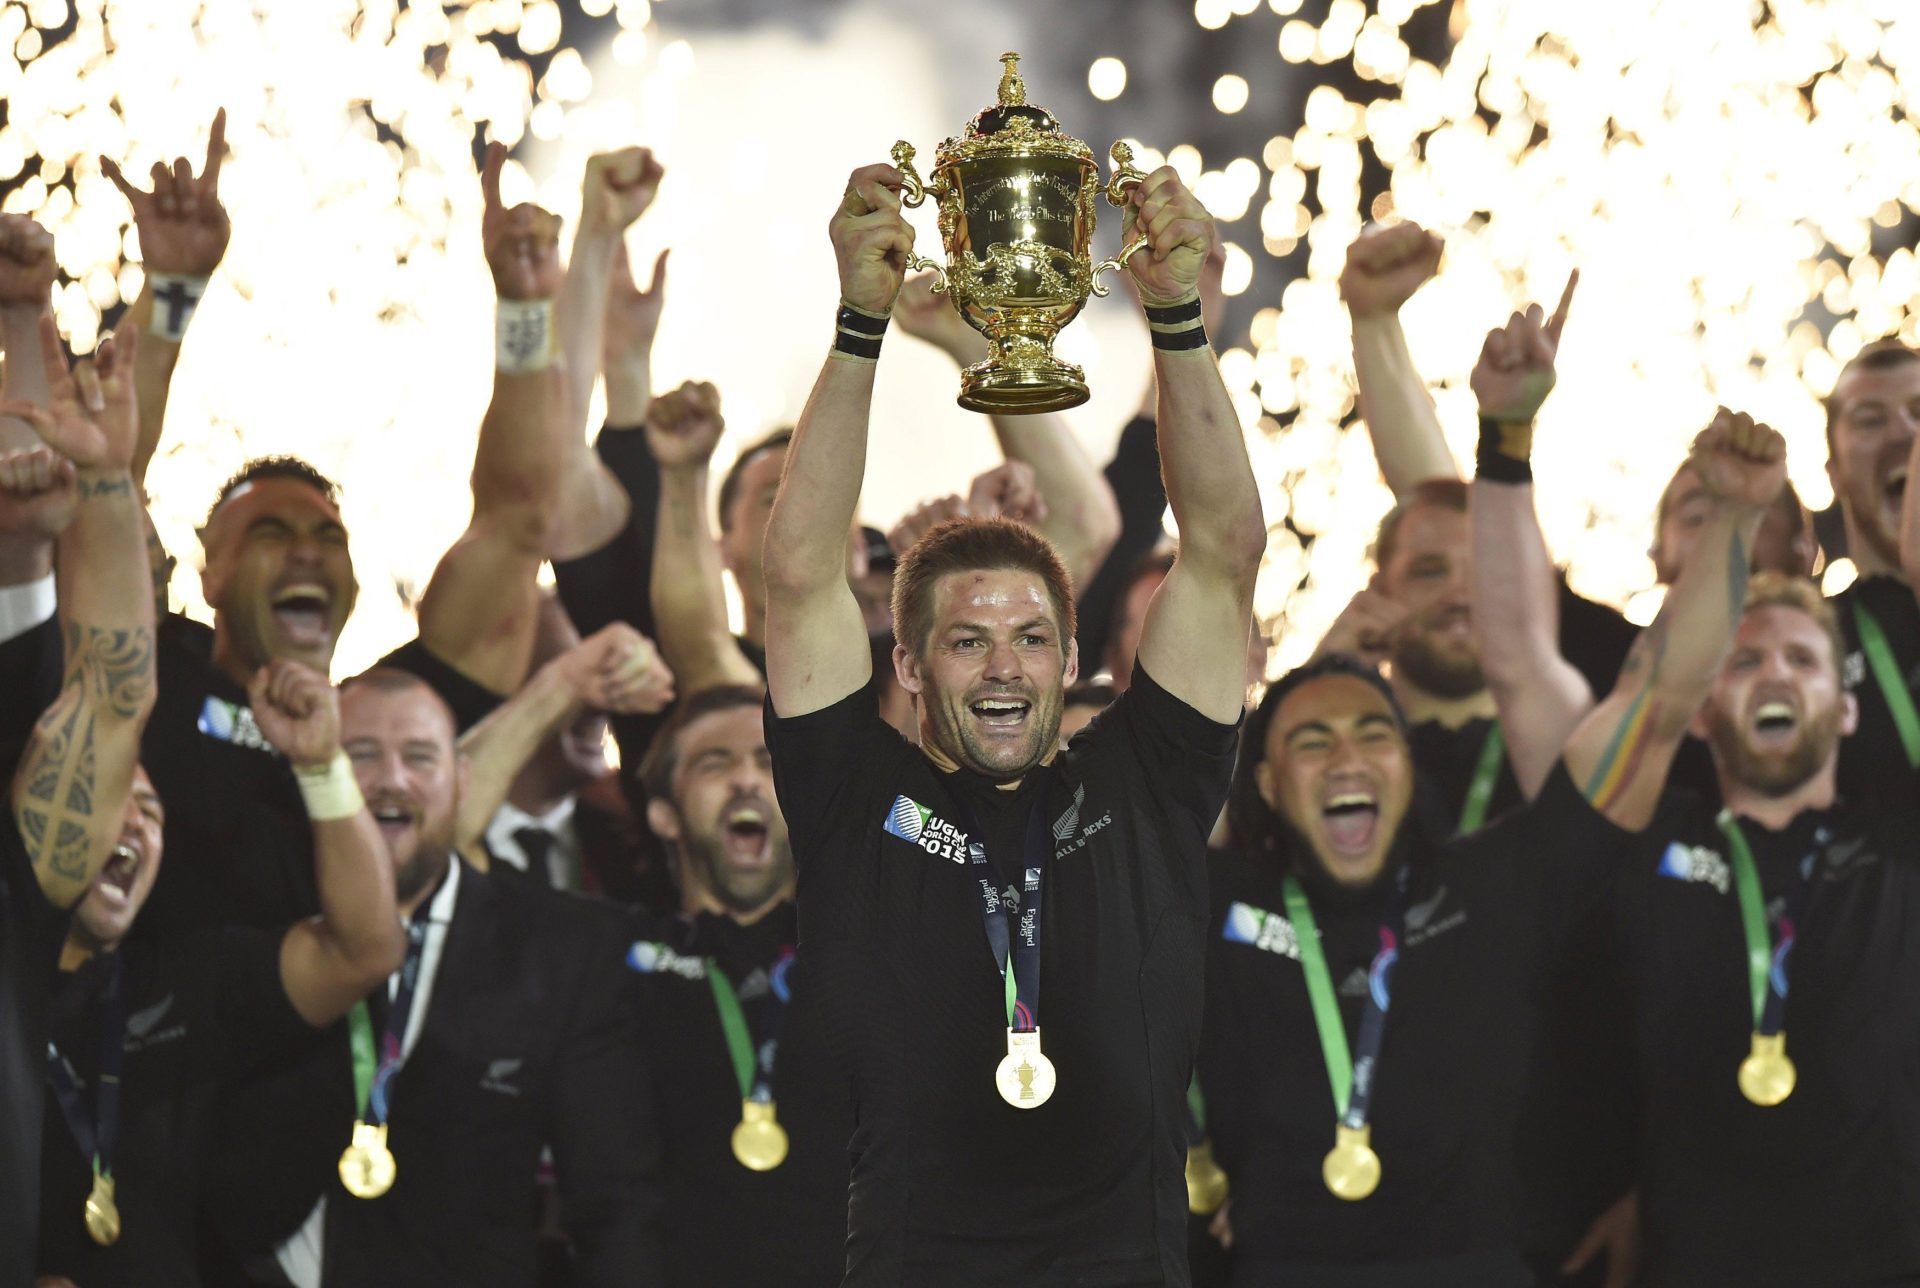 Nova Zelândia, a última campeã da Copa do Mundo de Rugby: ESPN exibirá Mundial de 2019 com exclusividade (Reprodução/ESPN)